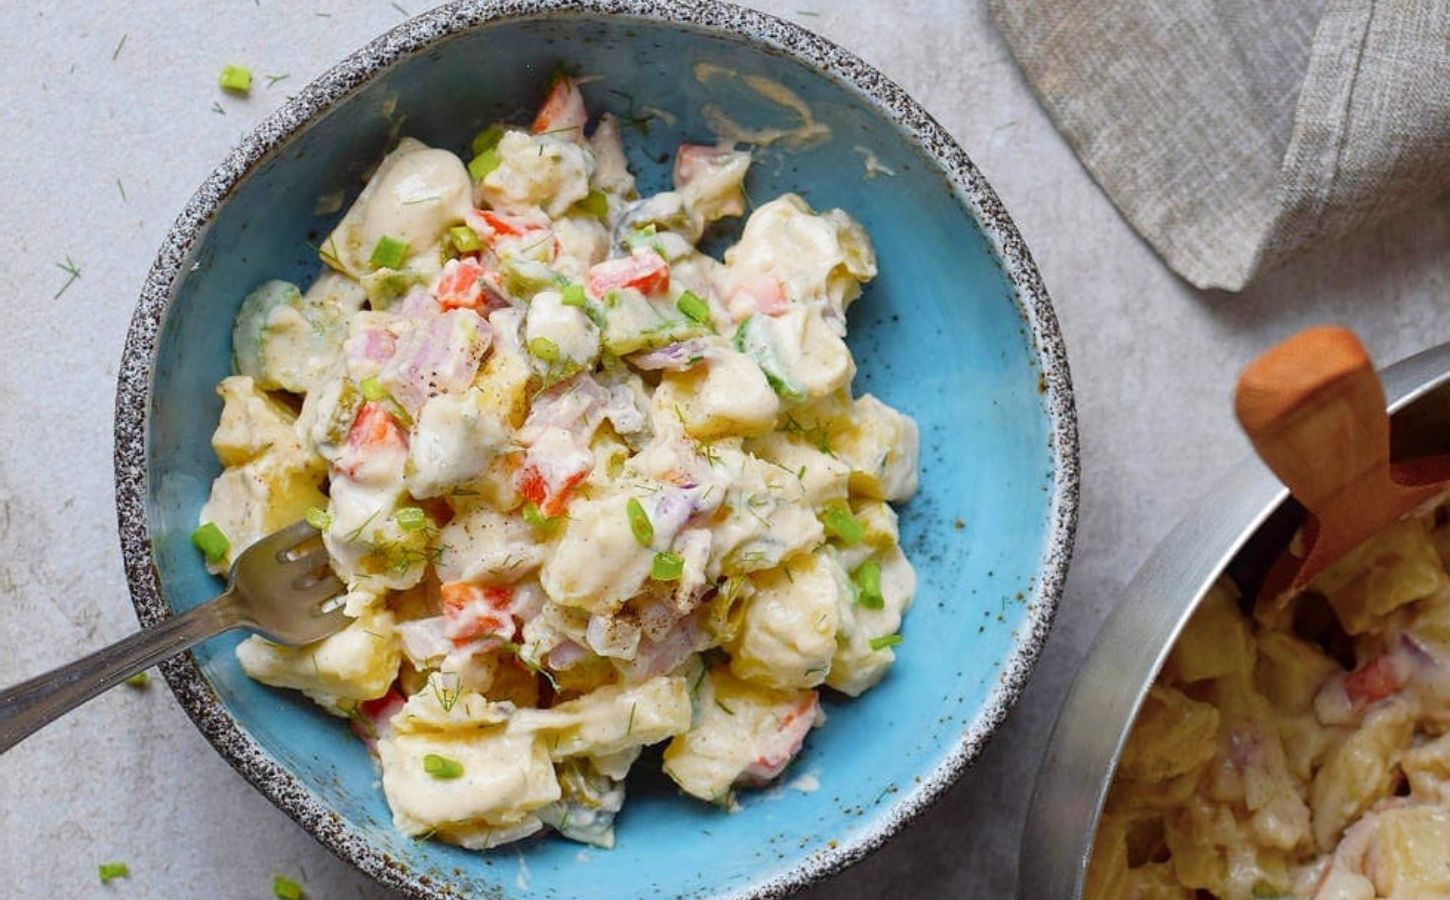 A bowl of healthy creamy vegan potato salad by ElaVegan